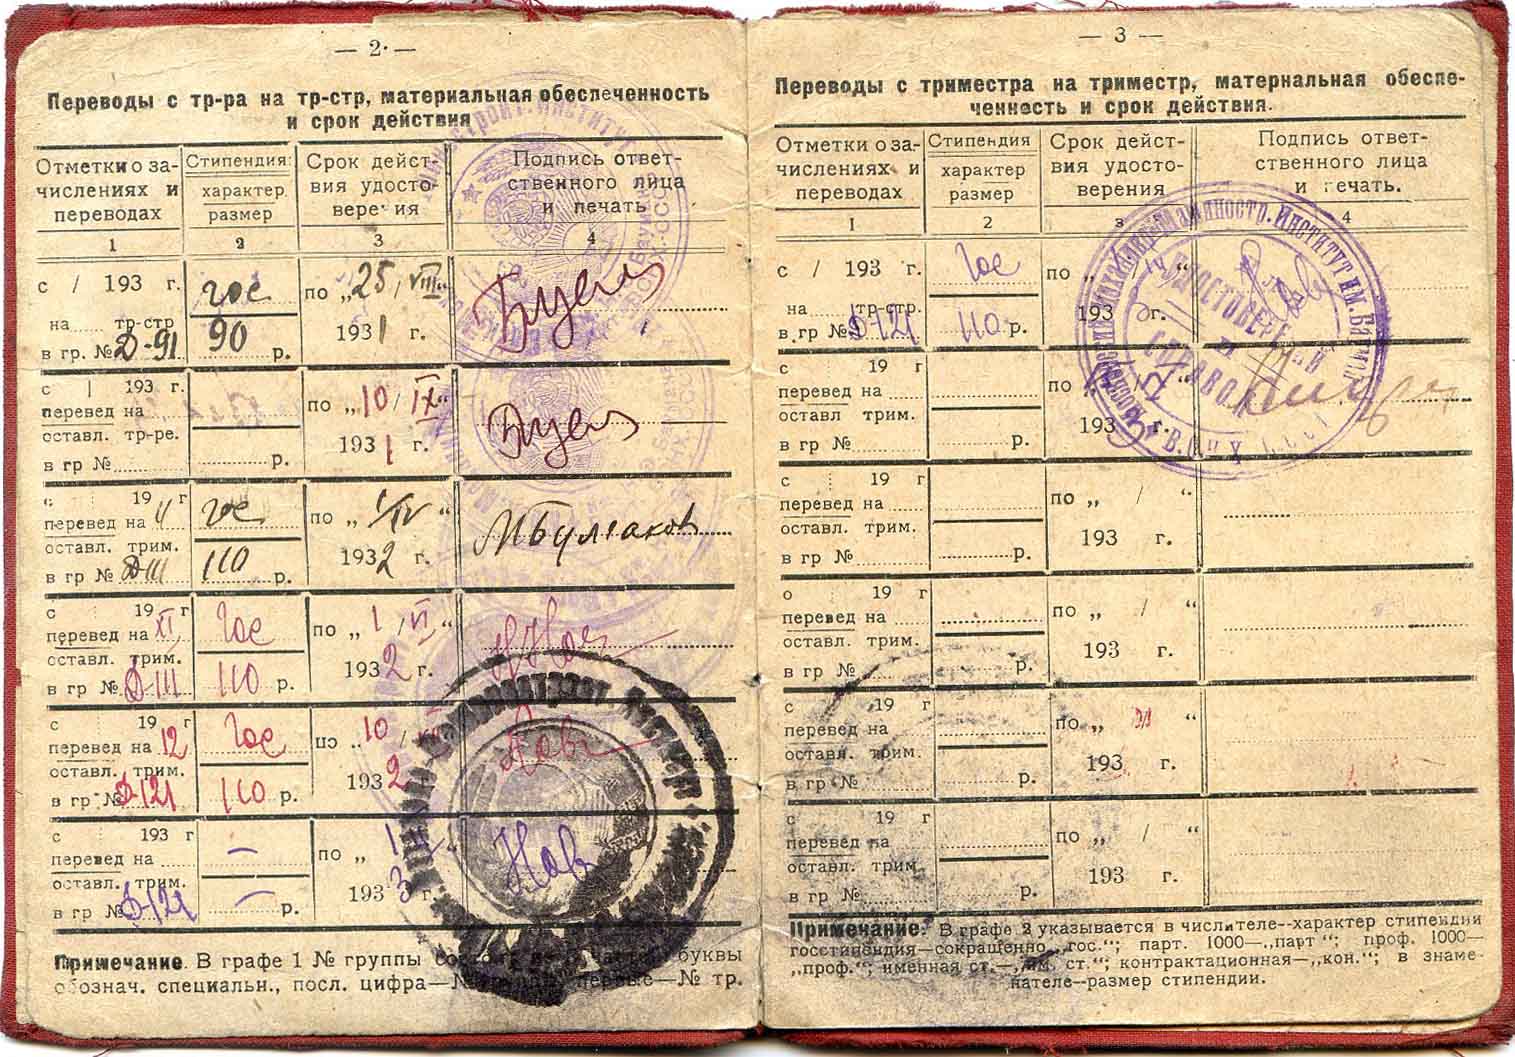 Студенческое удостоверение, 1931